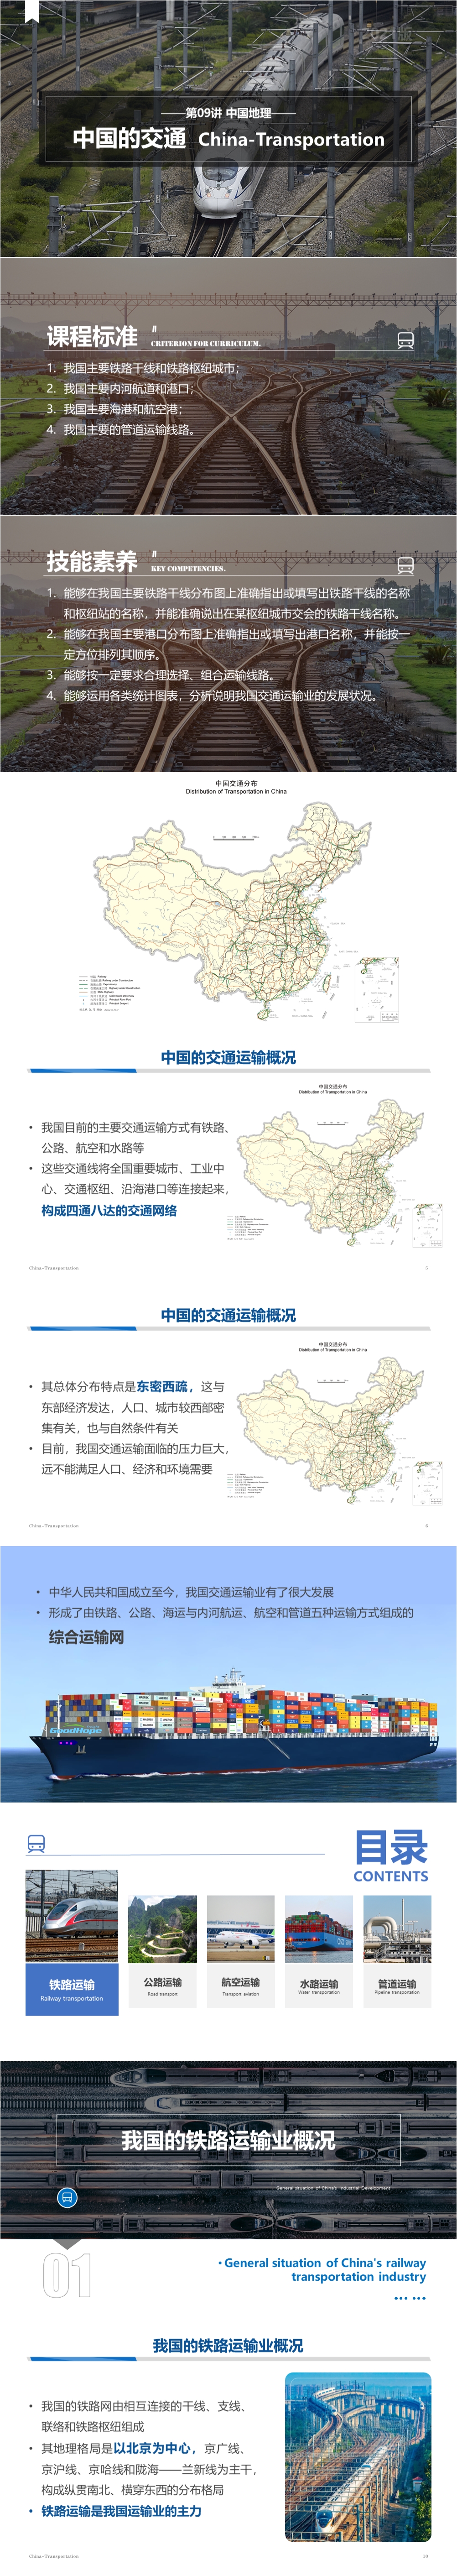 第09讲 中国的交通运输业 [2021版]-1000px.jpg